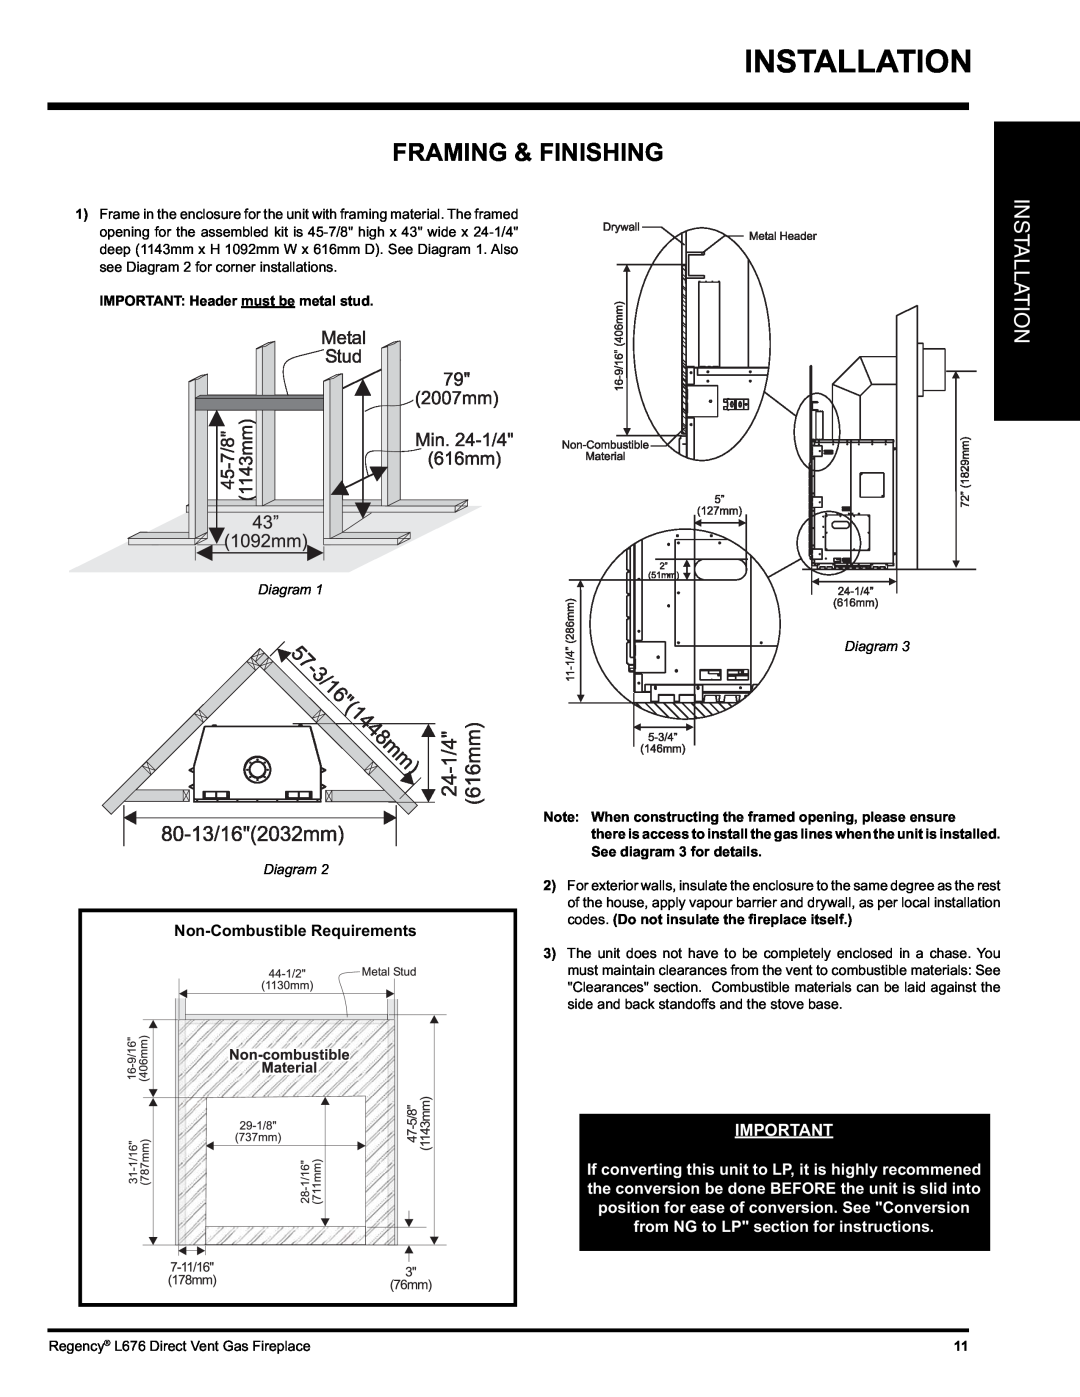 Regency L676 installation manual Installation, Framing & Finishing, Diagram Diagram 